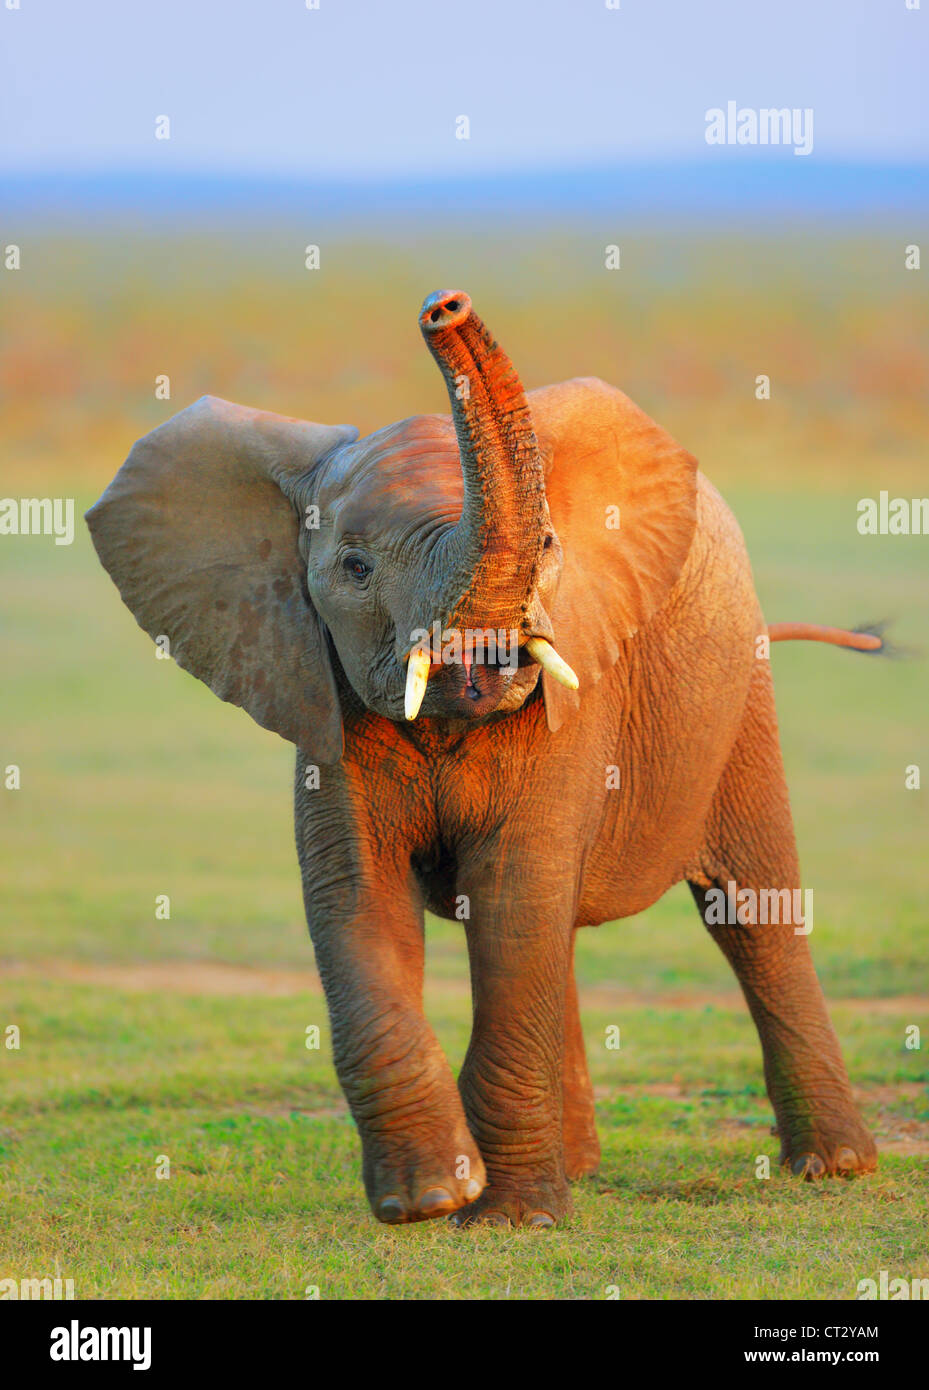 Bébé éléphant à coffre soulevé - Addo Elephant National Park - Afrique du Sud Banque D'Images